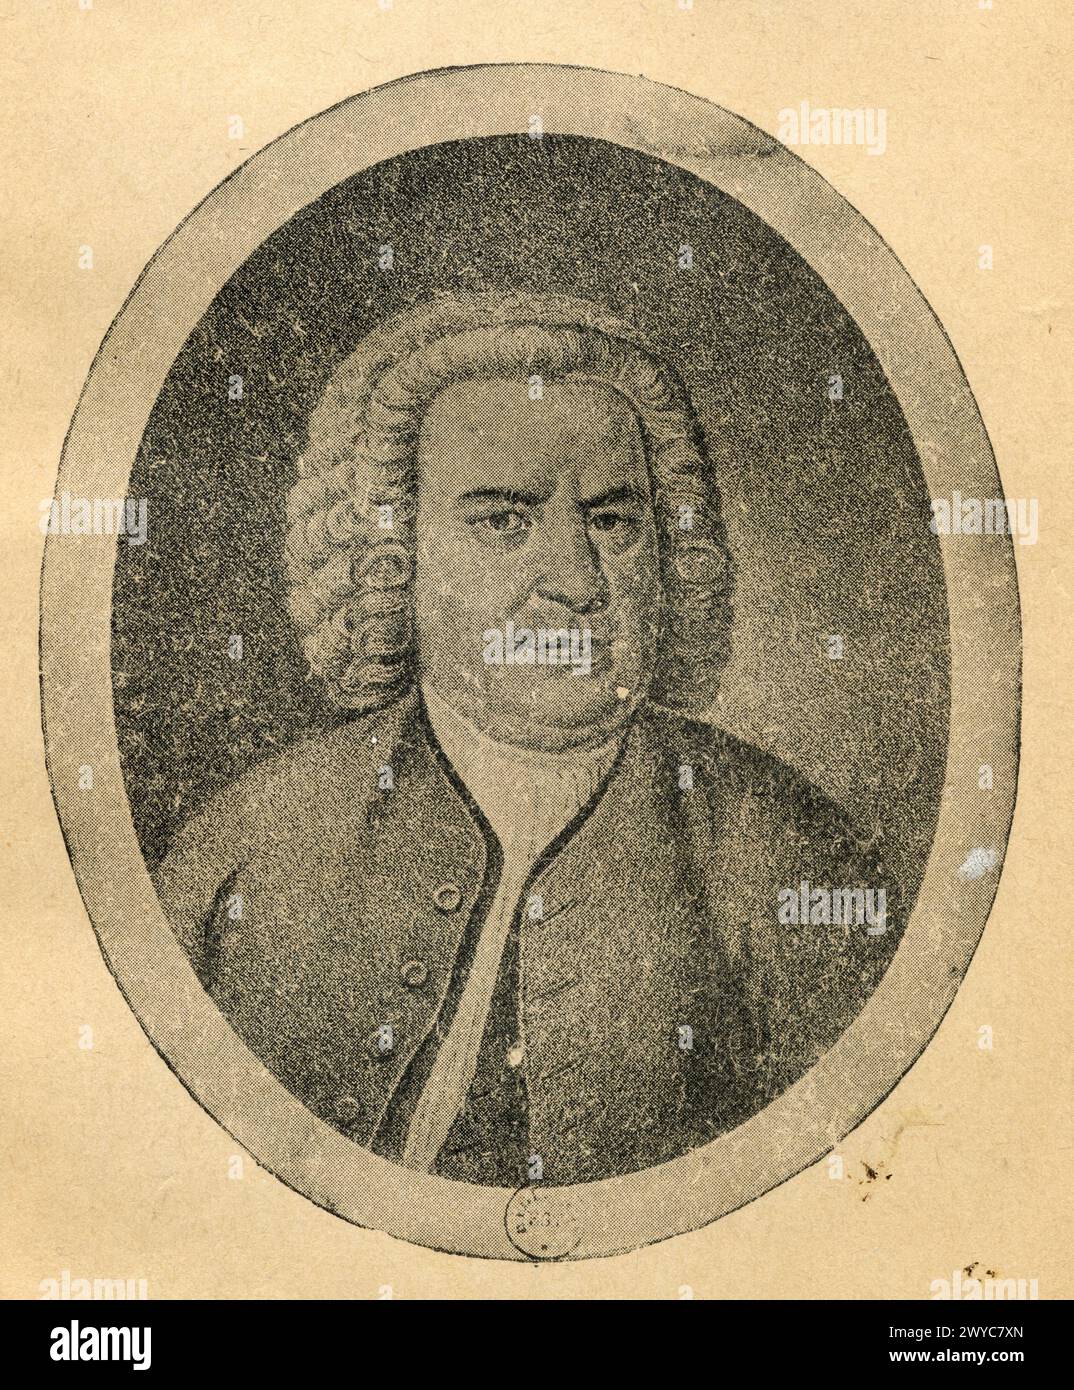 ean-Sébastien Bach est un compositeur et musicien allemand né le 21 mars 1685 à Eisenach dans le duché de Saxe-Eisenach et mort le 28 juillet 1750 à L Foto Stock